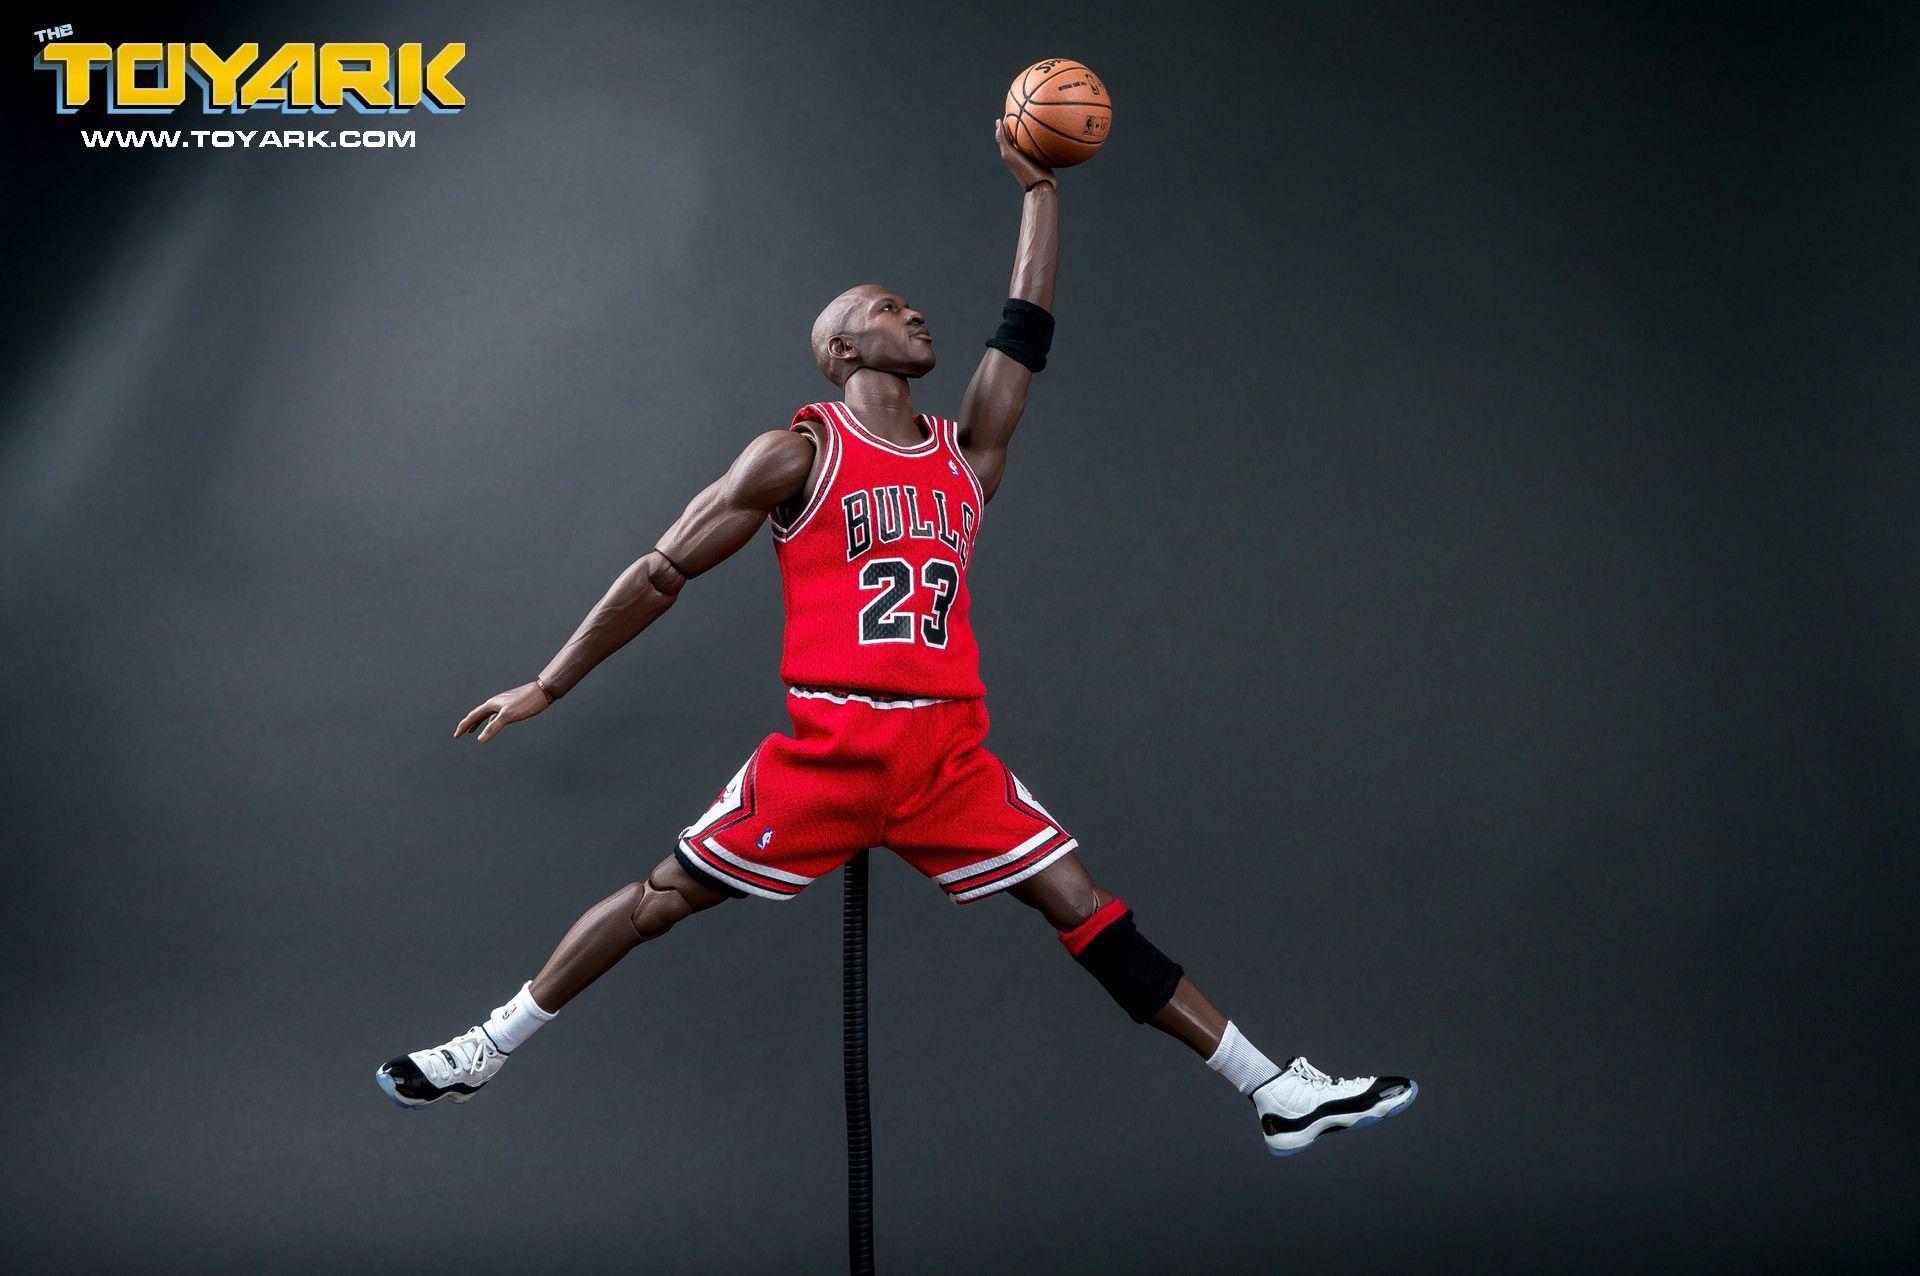 Michael Jordan Jumpman HD Beautiful Basketball Wallpaper Make Sure To